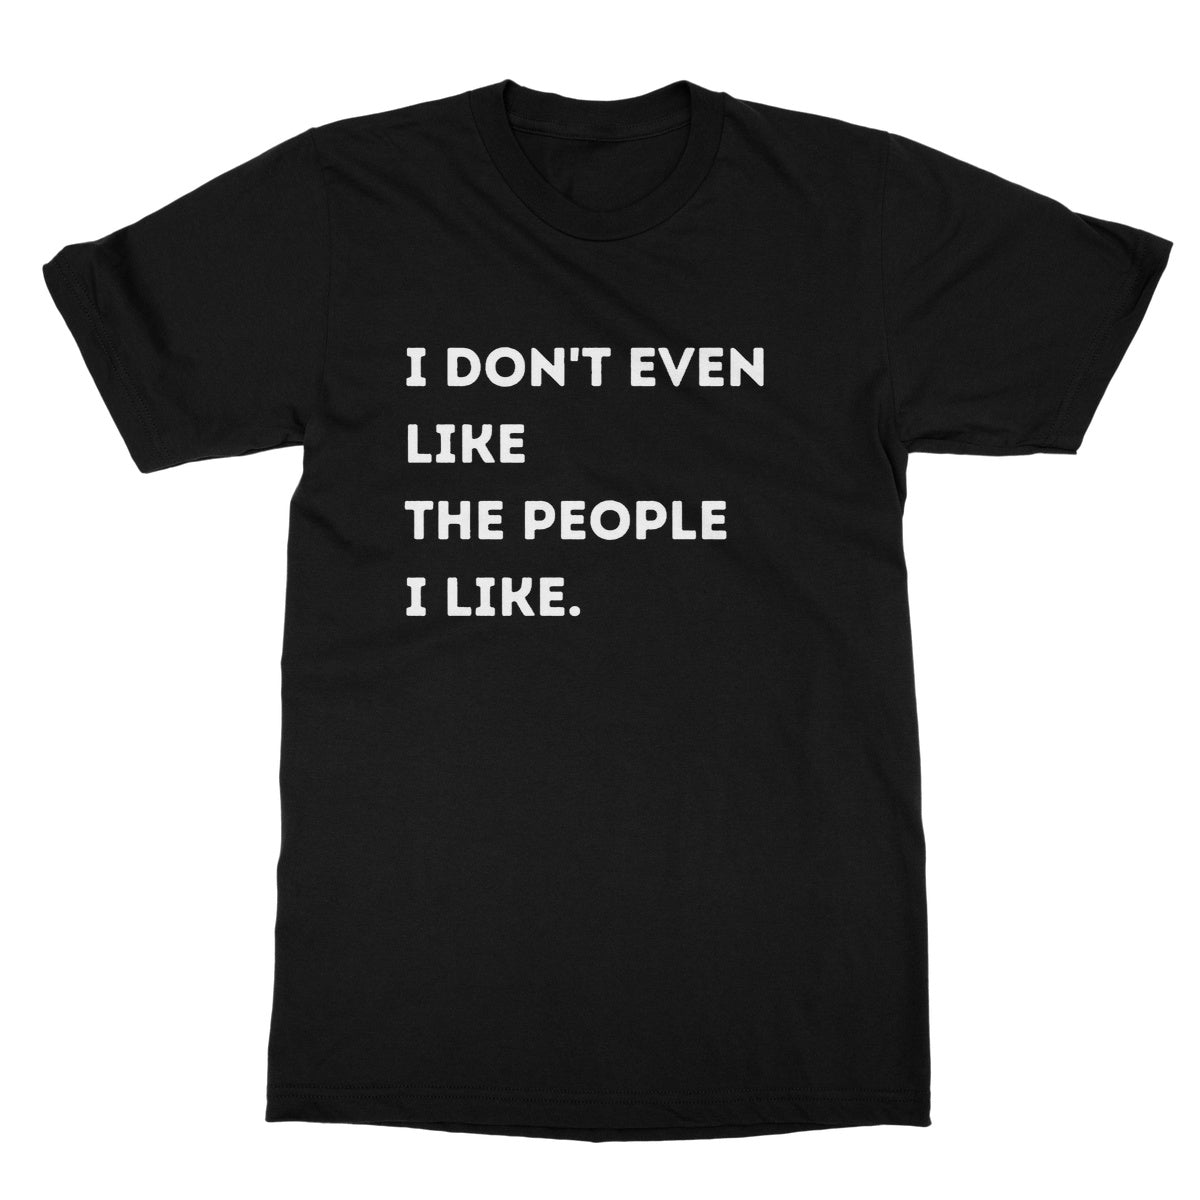 I don't even like the people I like t shirt black